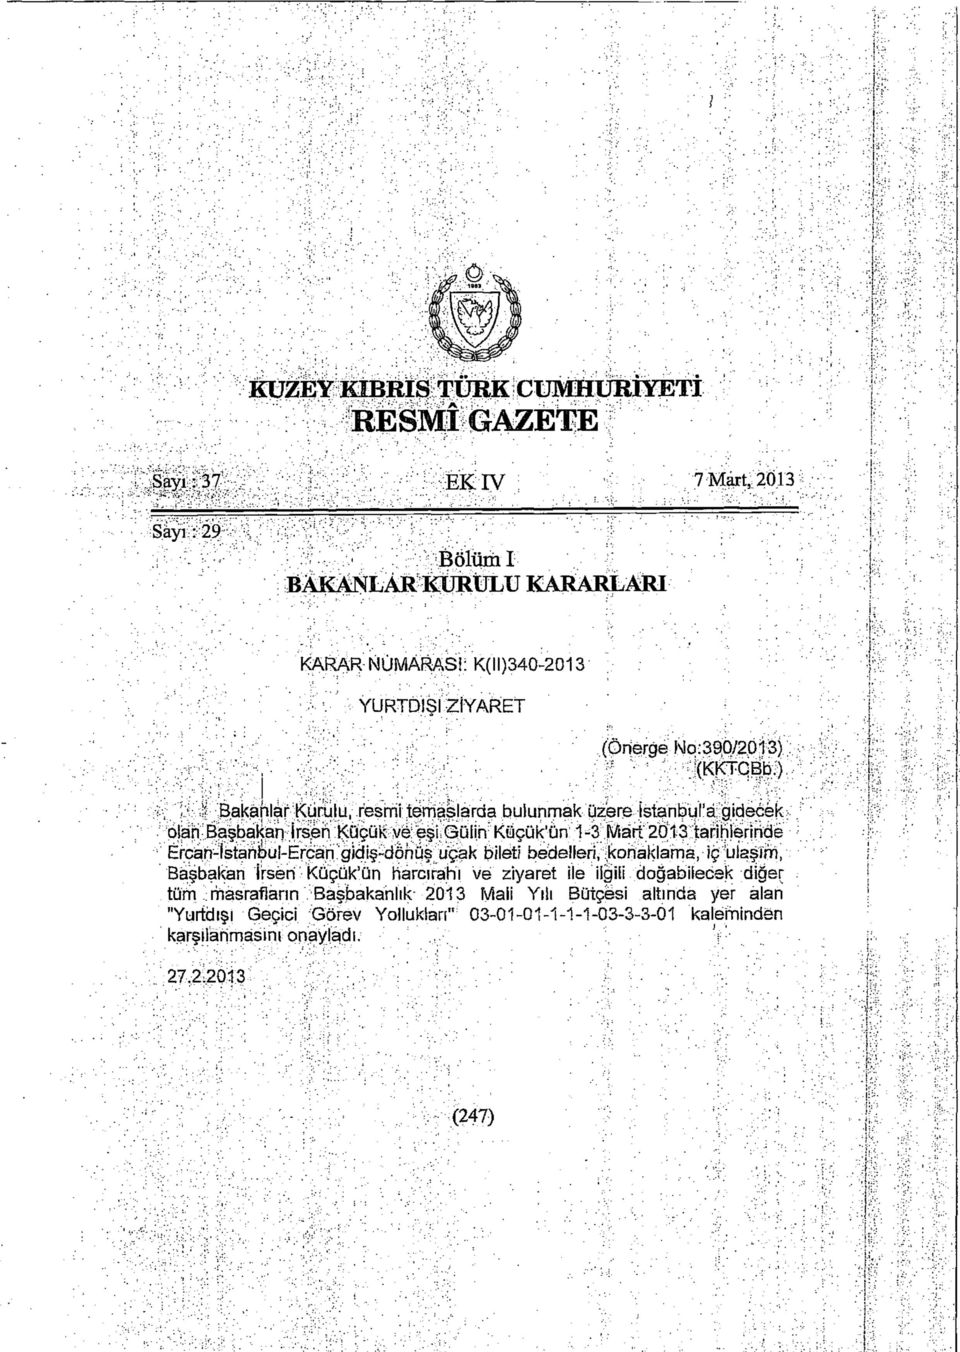 ) '' Bakanlar Kurulu, resmi temaslarda bulunmak üzere istanbul'a gidecek olan Başbakan İrsen Küçük ve: eşi Gülin Küçük'ün 1-3 Mart 2013 tarihlerinde